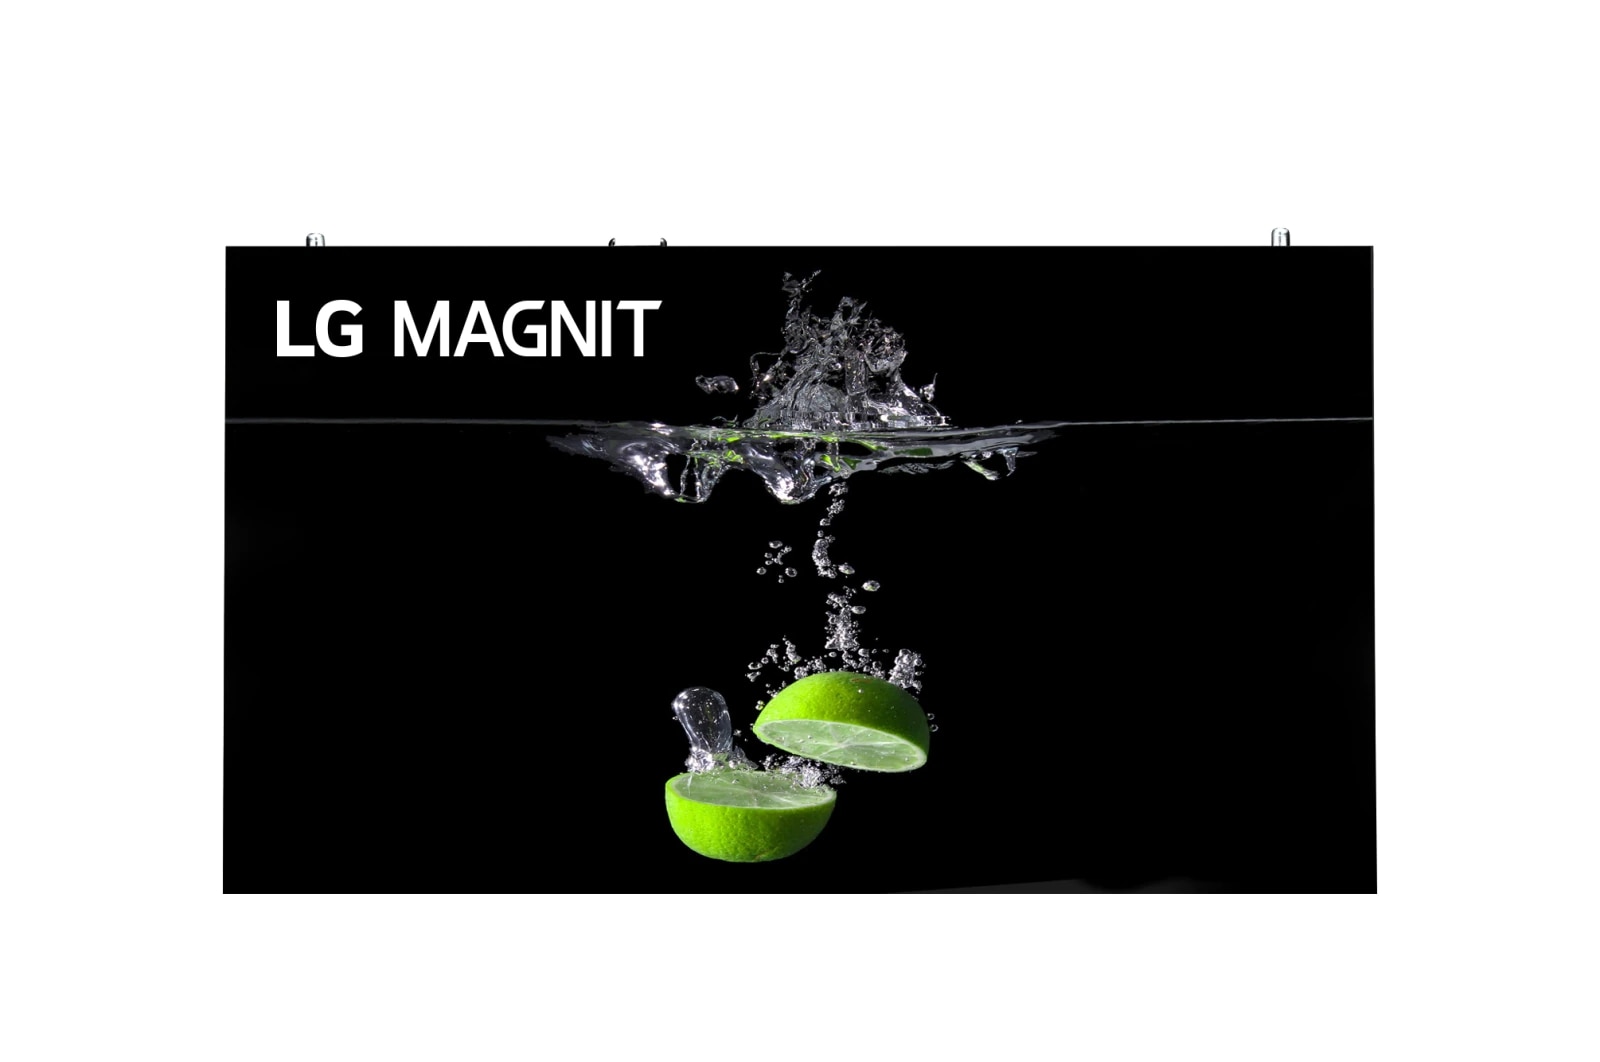 LG MAGNIT, LSAB012-EL1